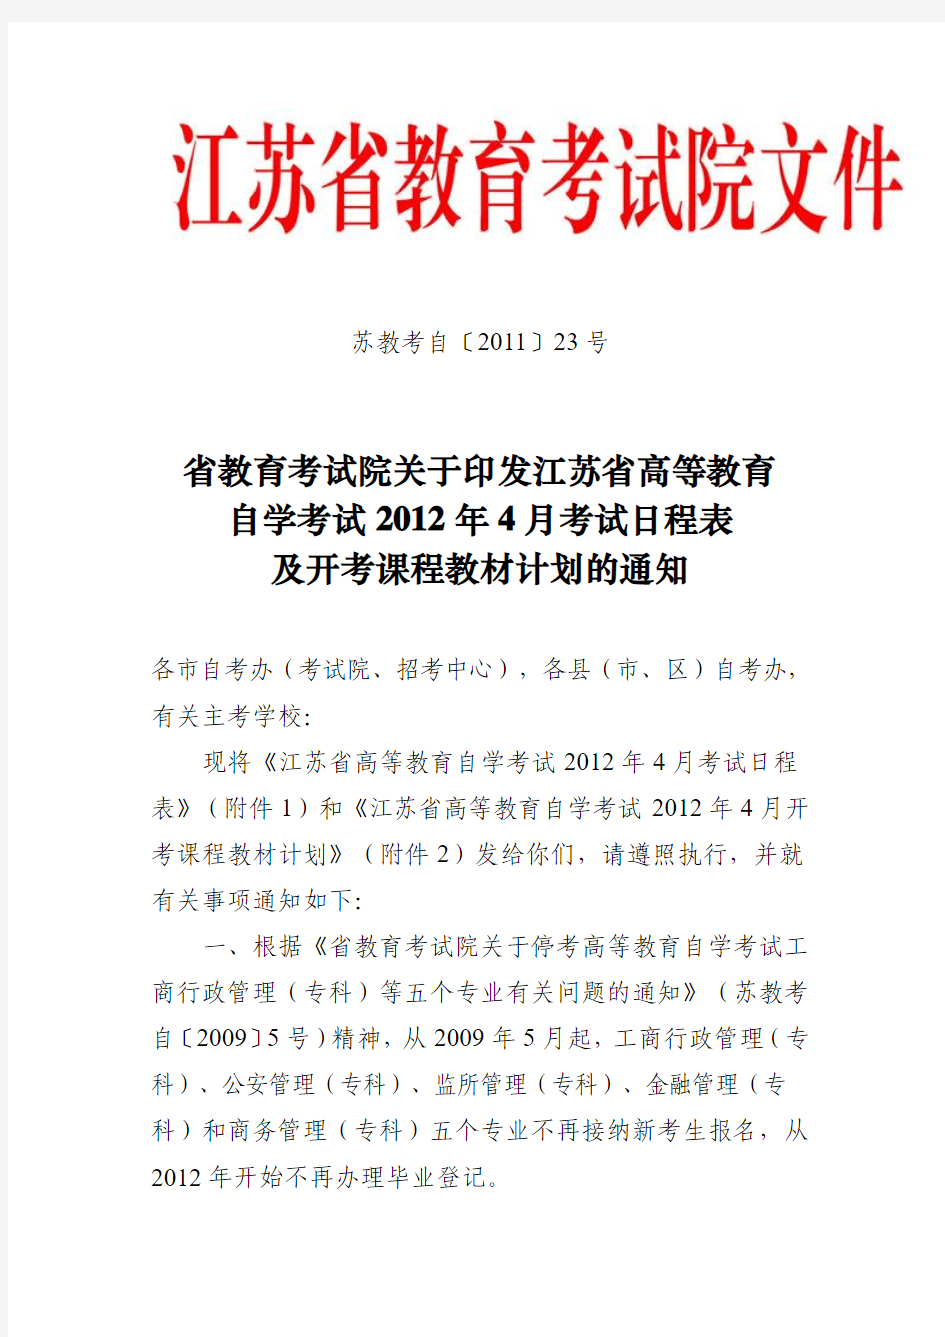 江苏省教育考试院关于自考的文件